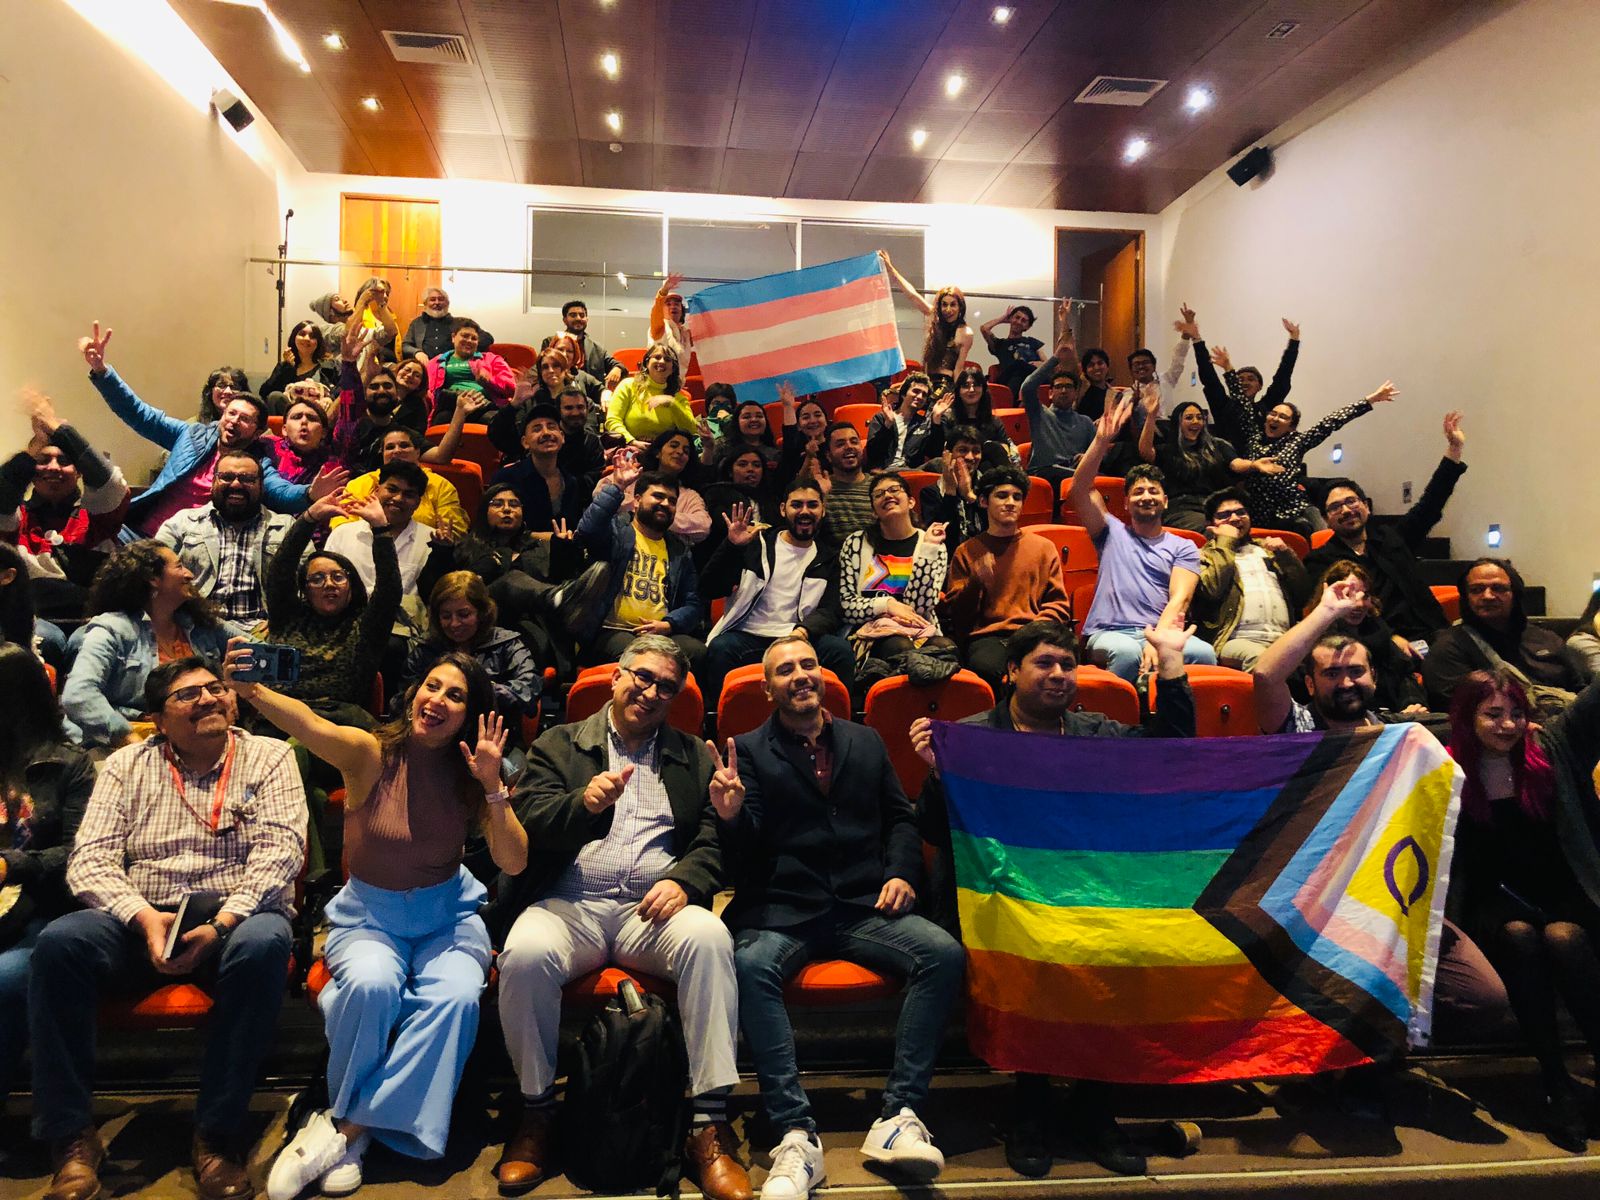 Corporación LGTB+Libre lanza proyecto de formación laboral gratuito para disidencias sexuales